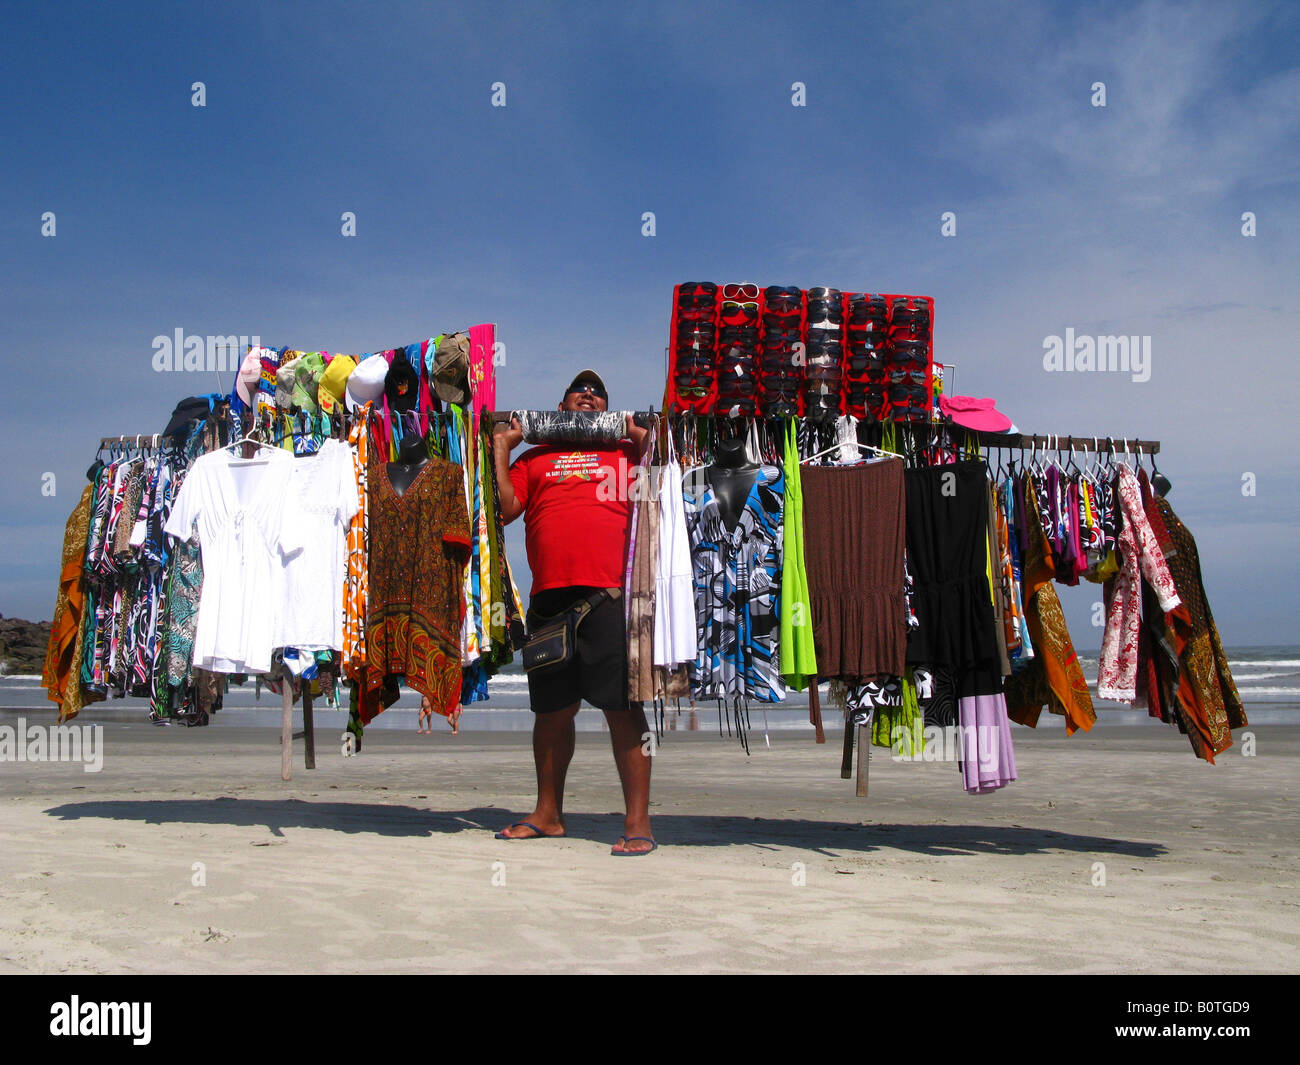 L'homme vend des thongs à Engenho Beach sur la côte nord de l'Etat de São Paulo Brésil 04 12 08 Banque D'Images